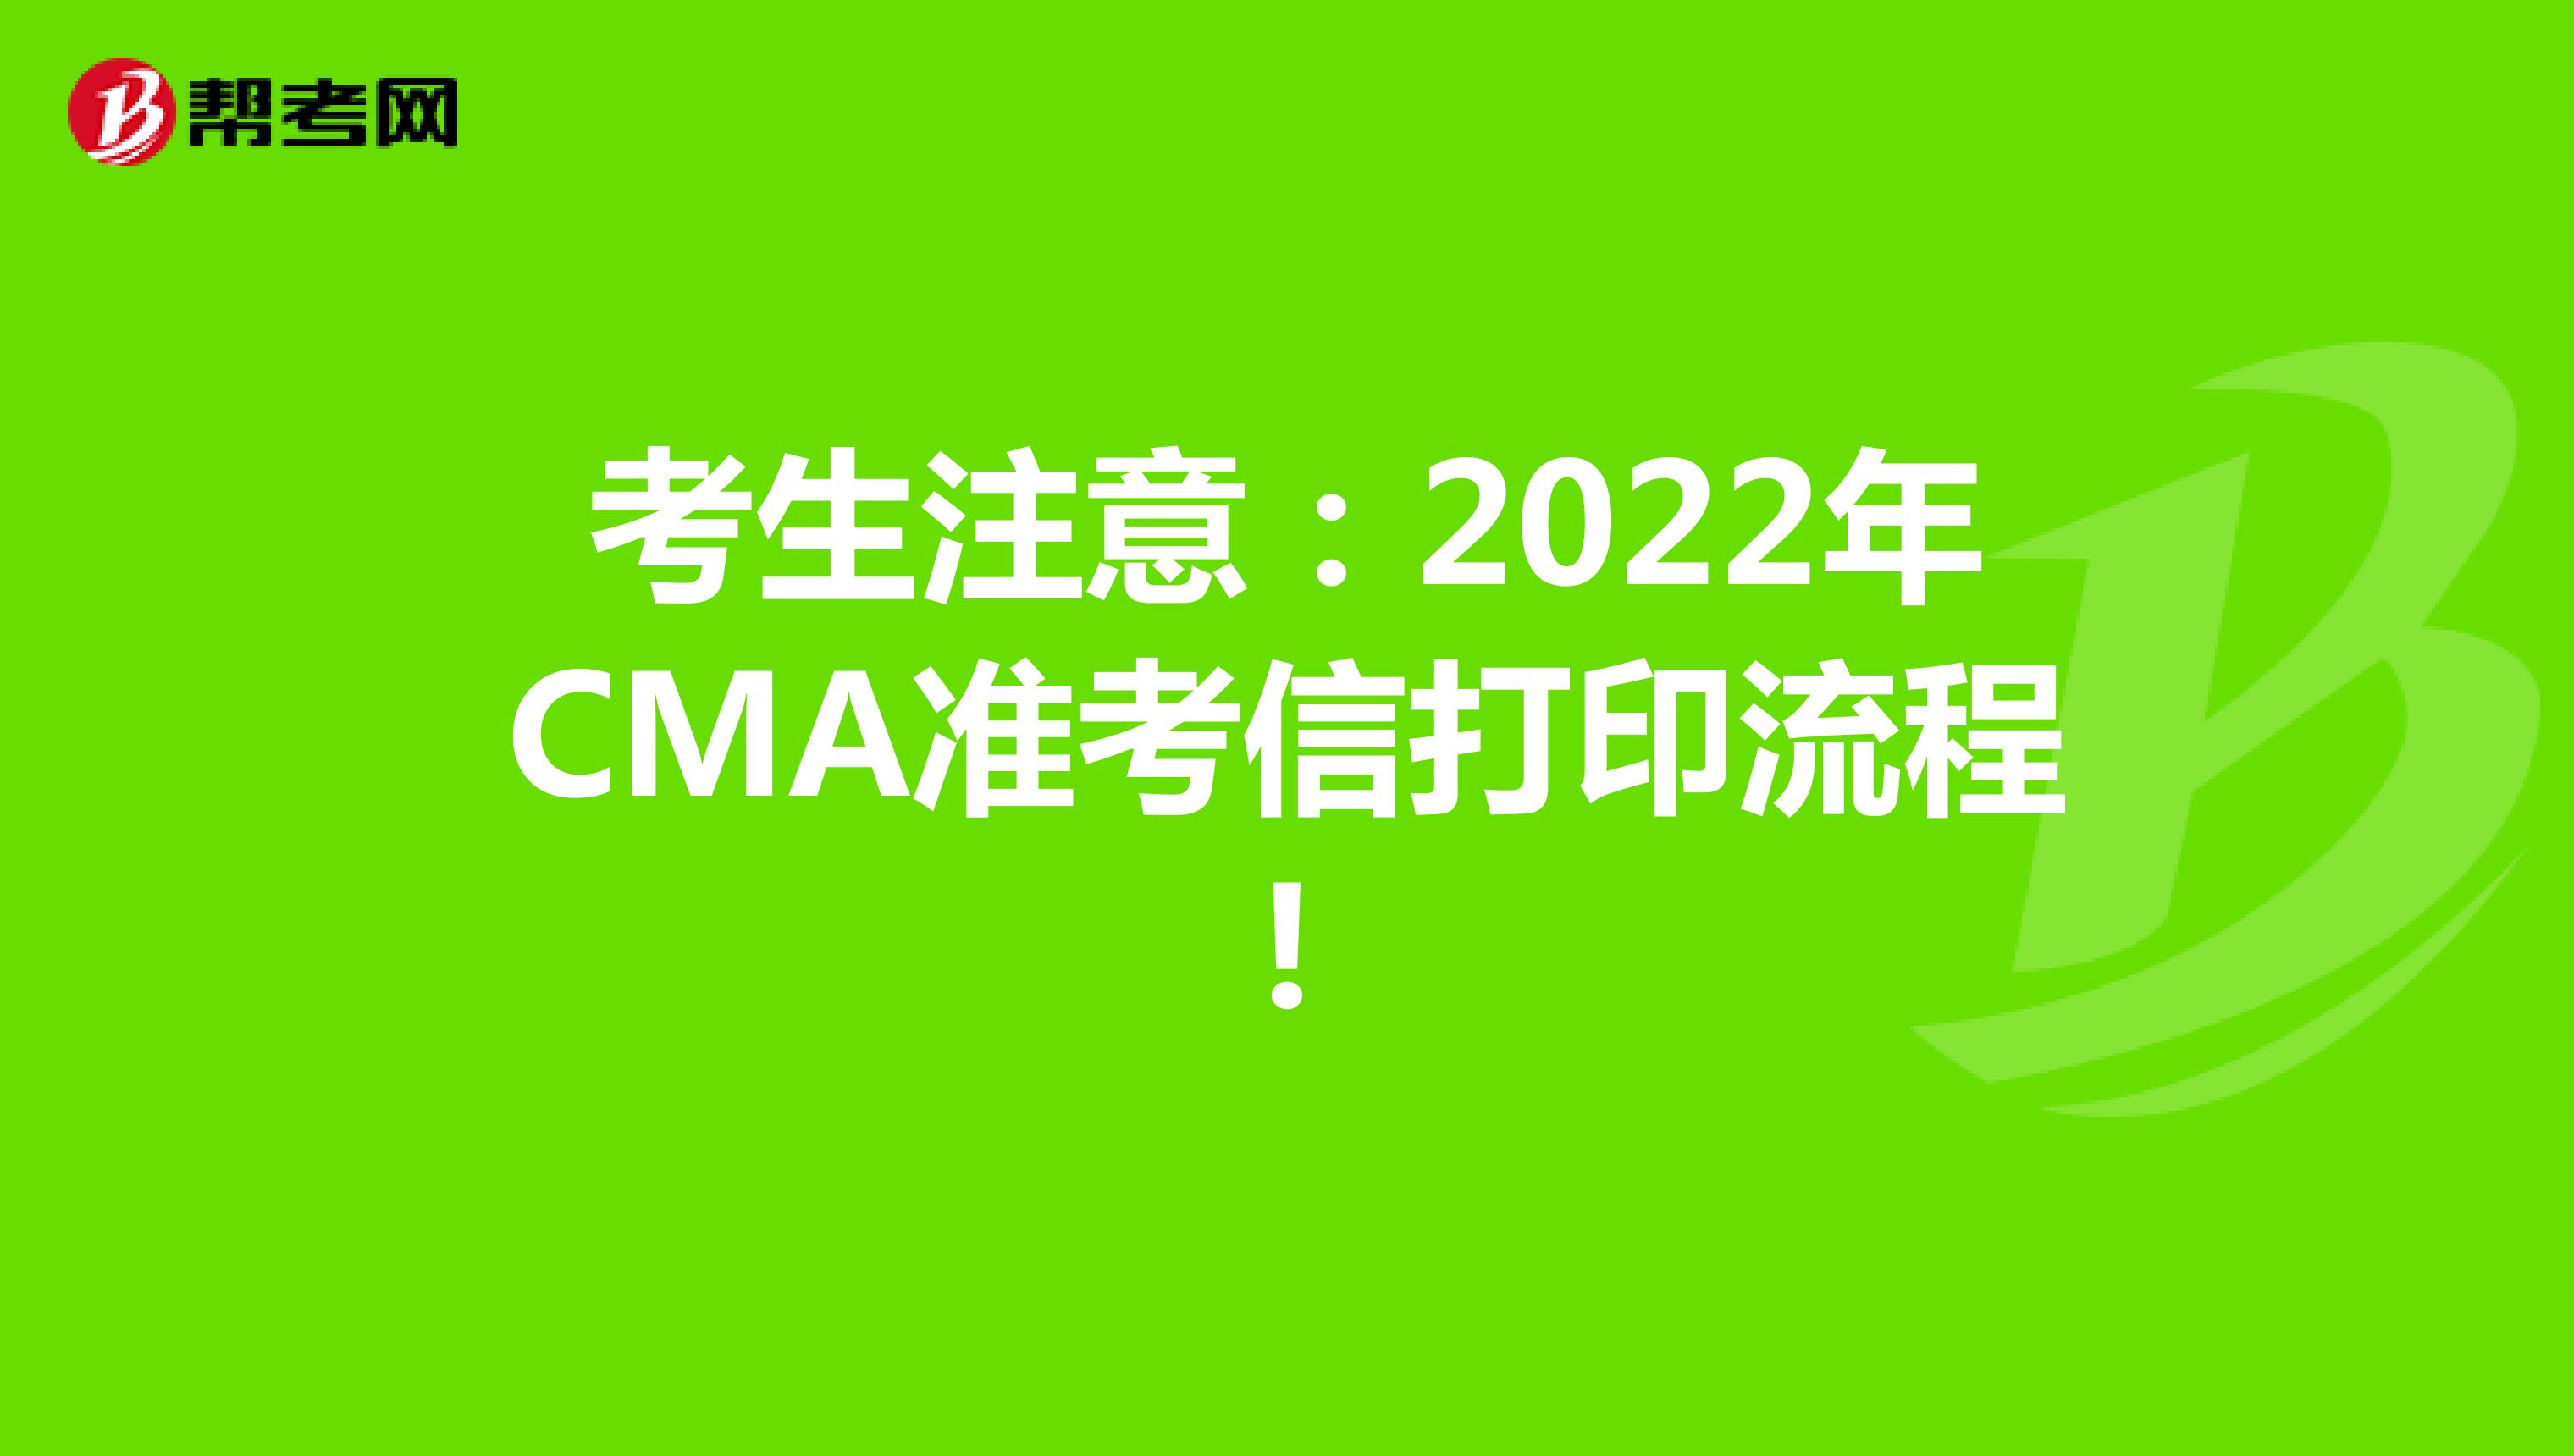 考生注意：2022年CMA准考信打印流程!